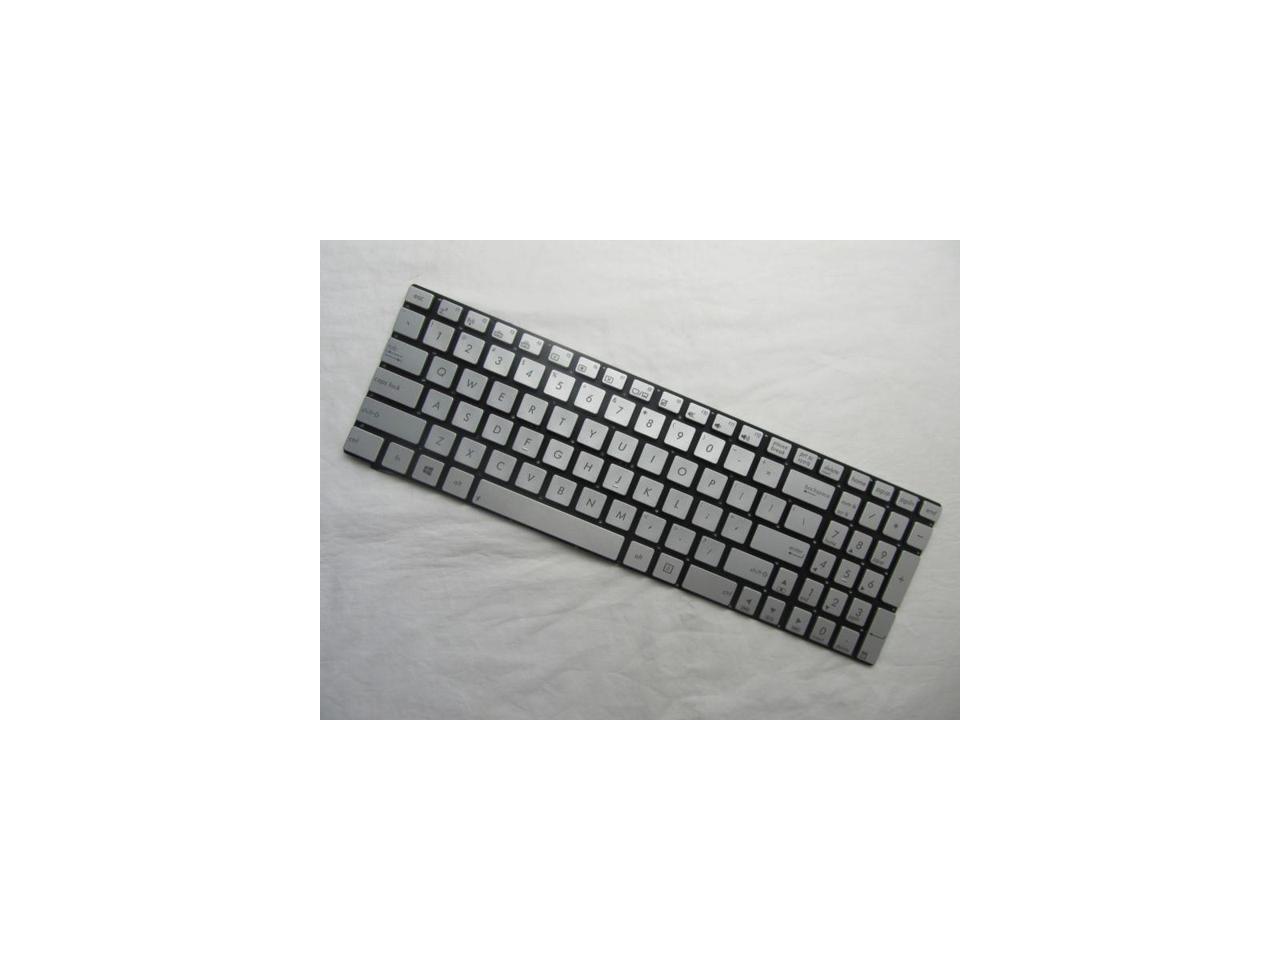 New US silver backlit keyboard for ASUS Q550 Q550L Q550LF 0KNB0 ...